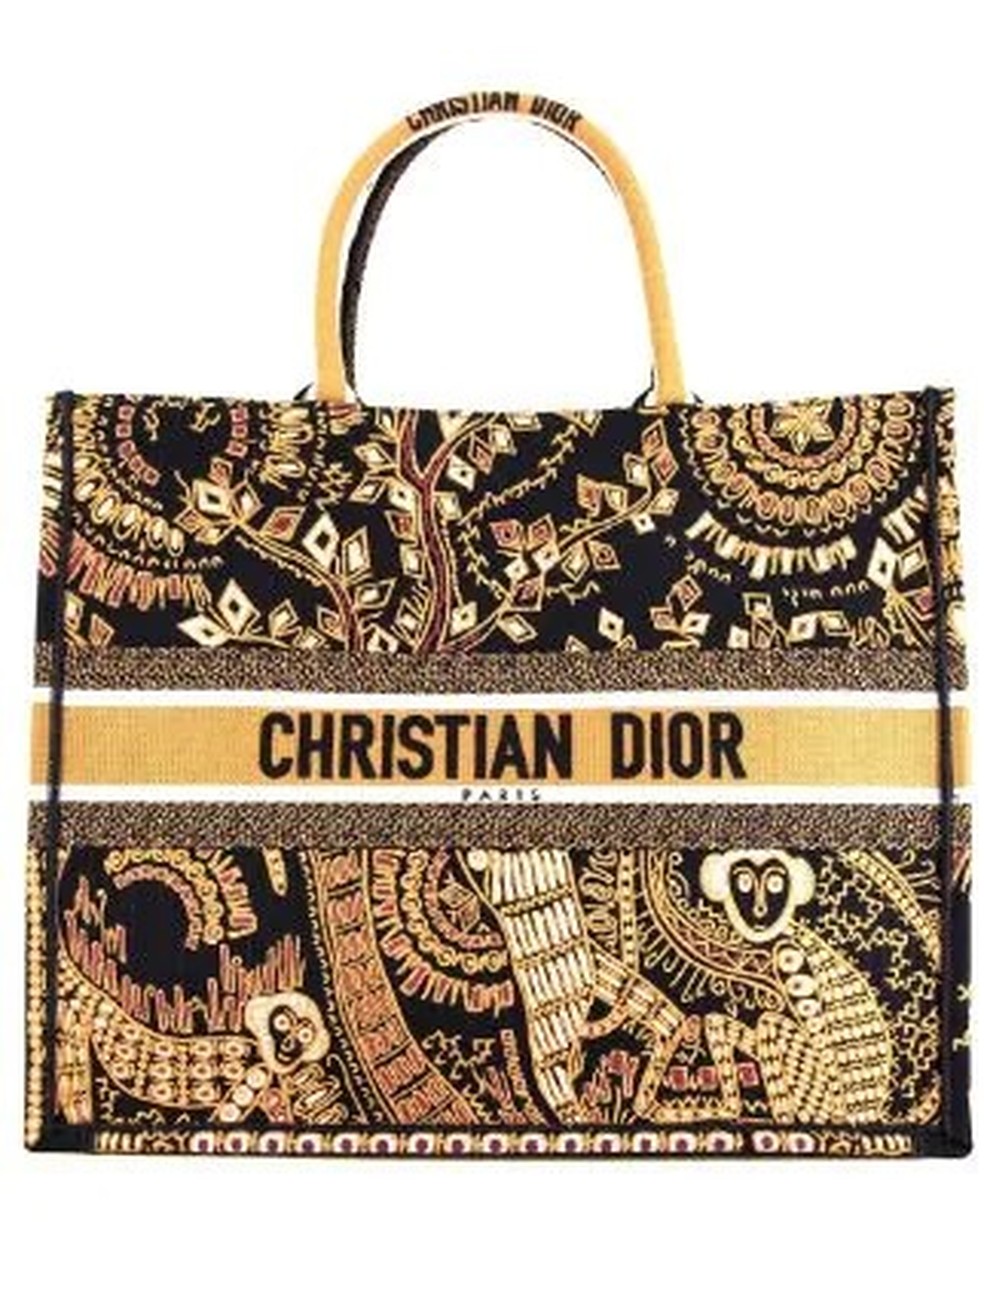 Bolsa book tote de Christian Dior, vendida na casa dos R$ 25 mil — Foto: Divulgação